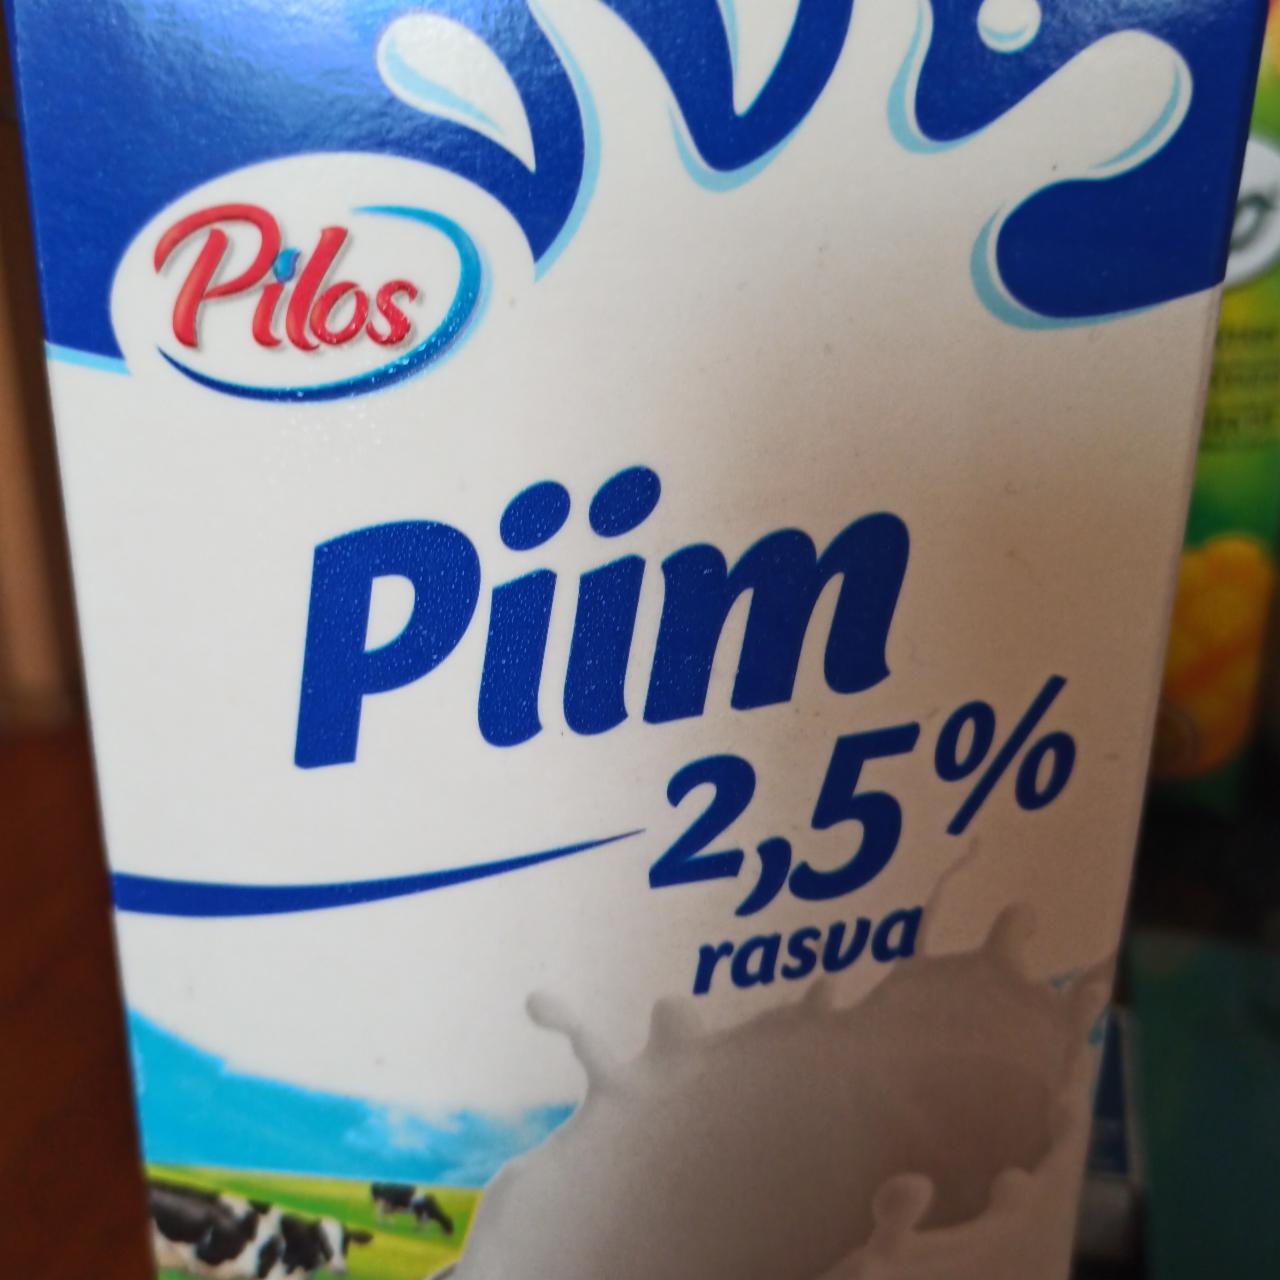 Фото - Piim 2.5% Pilos